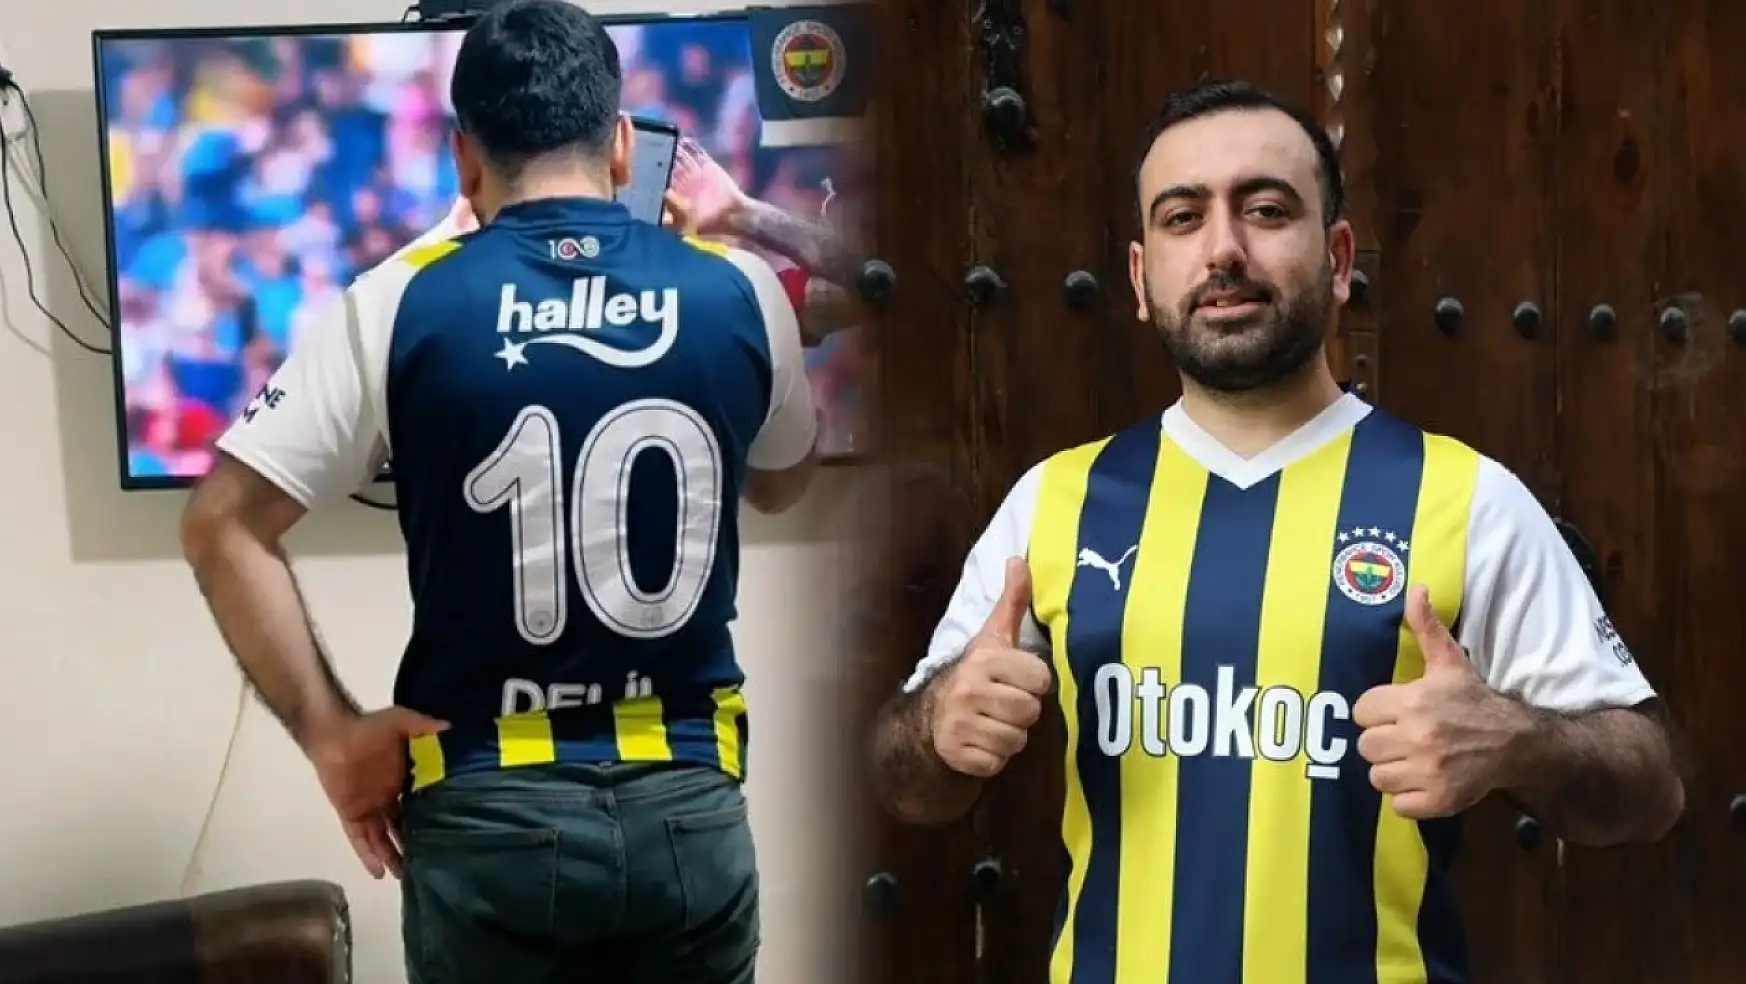 Fenerbahçeli taraftar, Icardi'nin 'Sınır dışı' edilmesi için polise şikayette bulundu